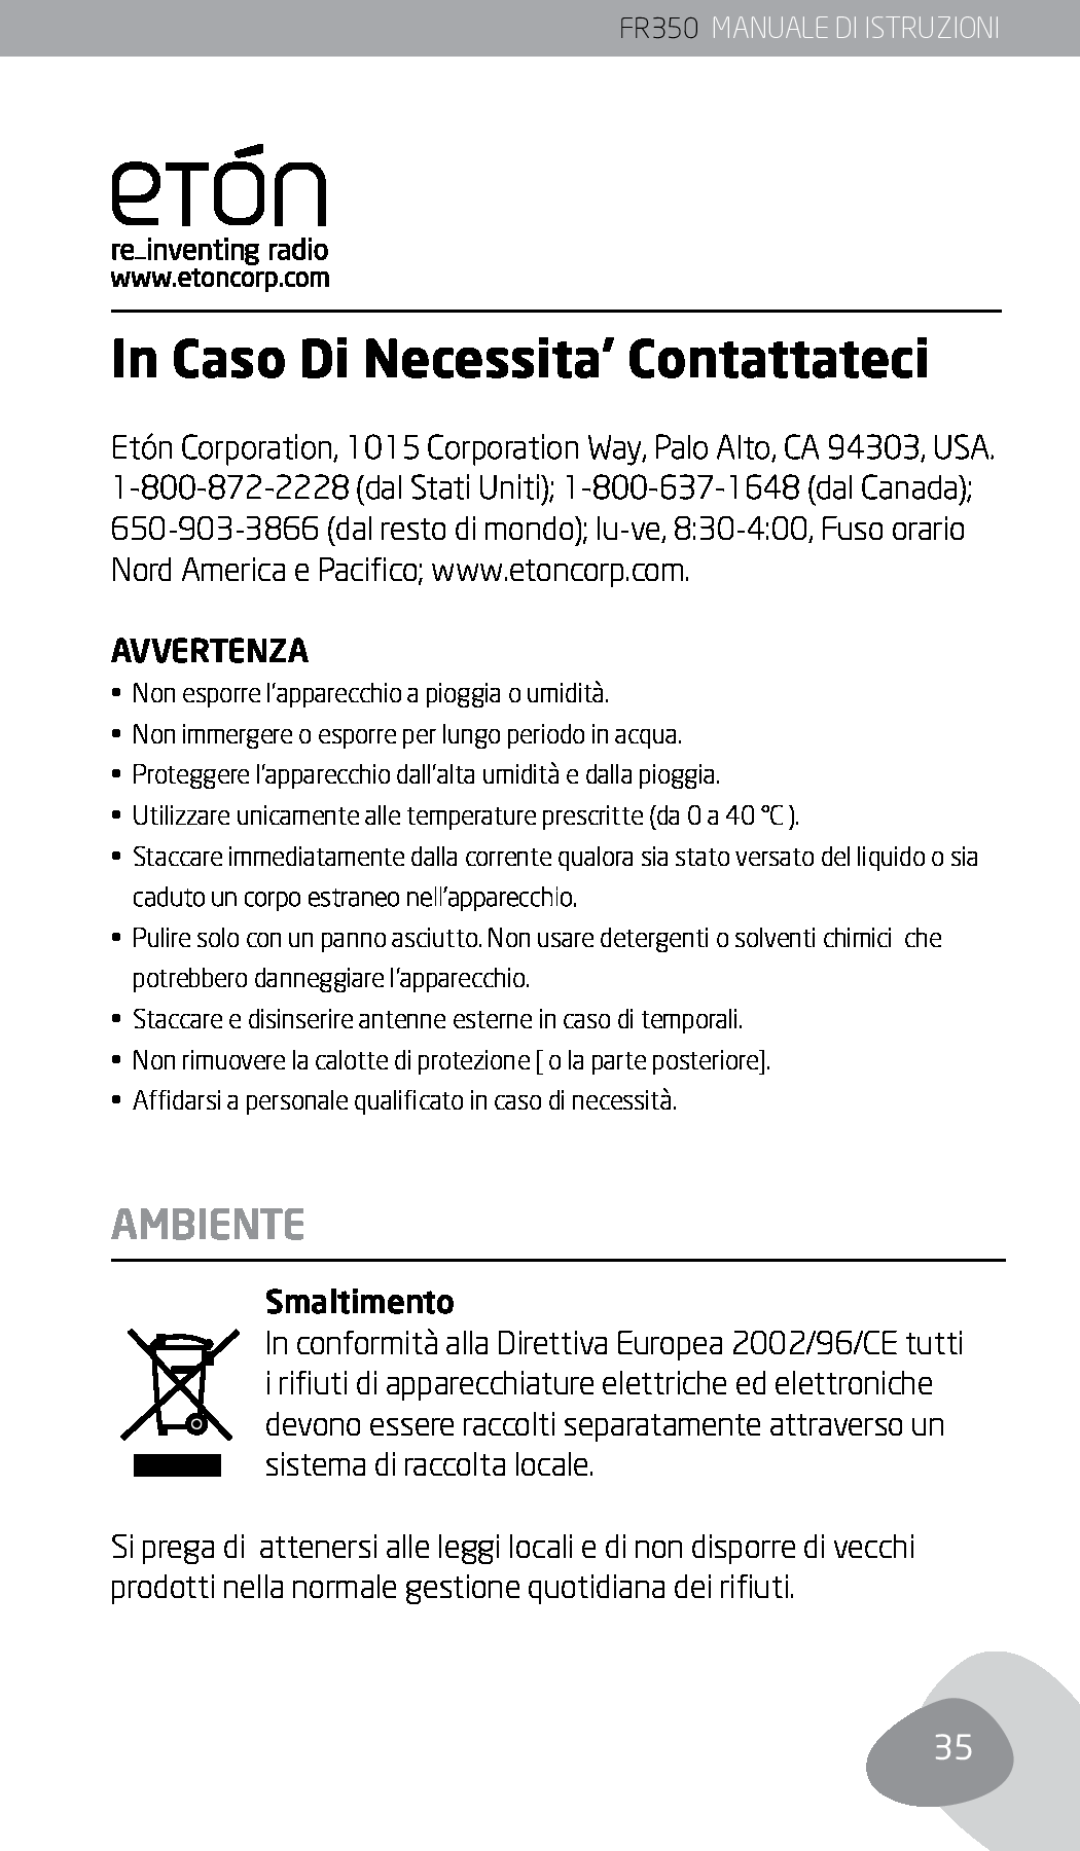 Eton owner manual In Caso Di Necessita’ Contattateci, Ambiente, FR350 MANUALE DI ISTRUZIONI 